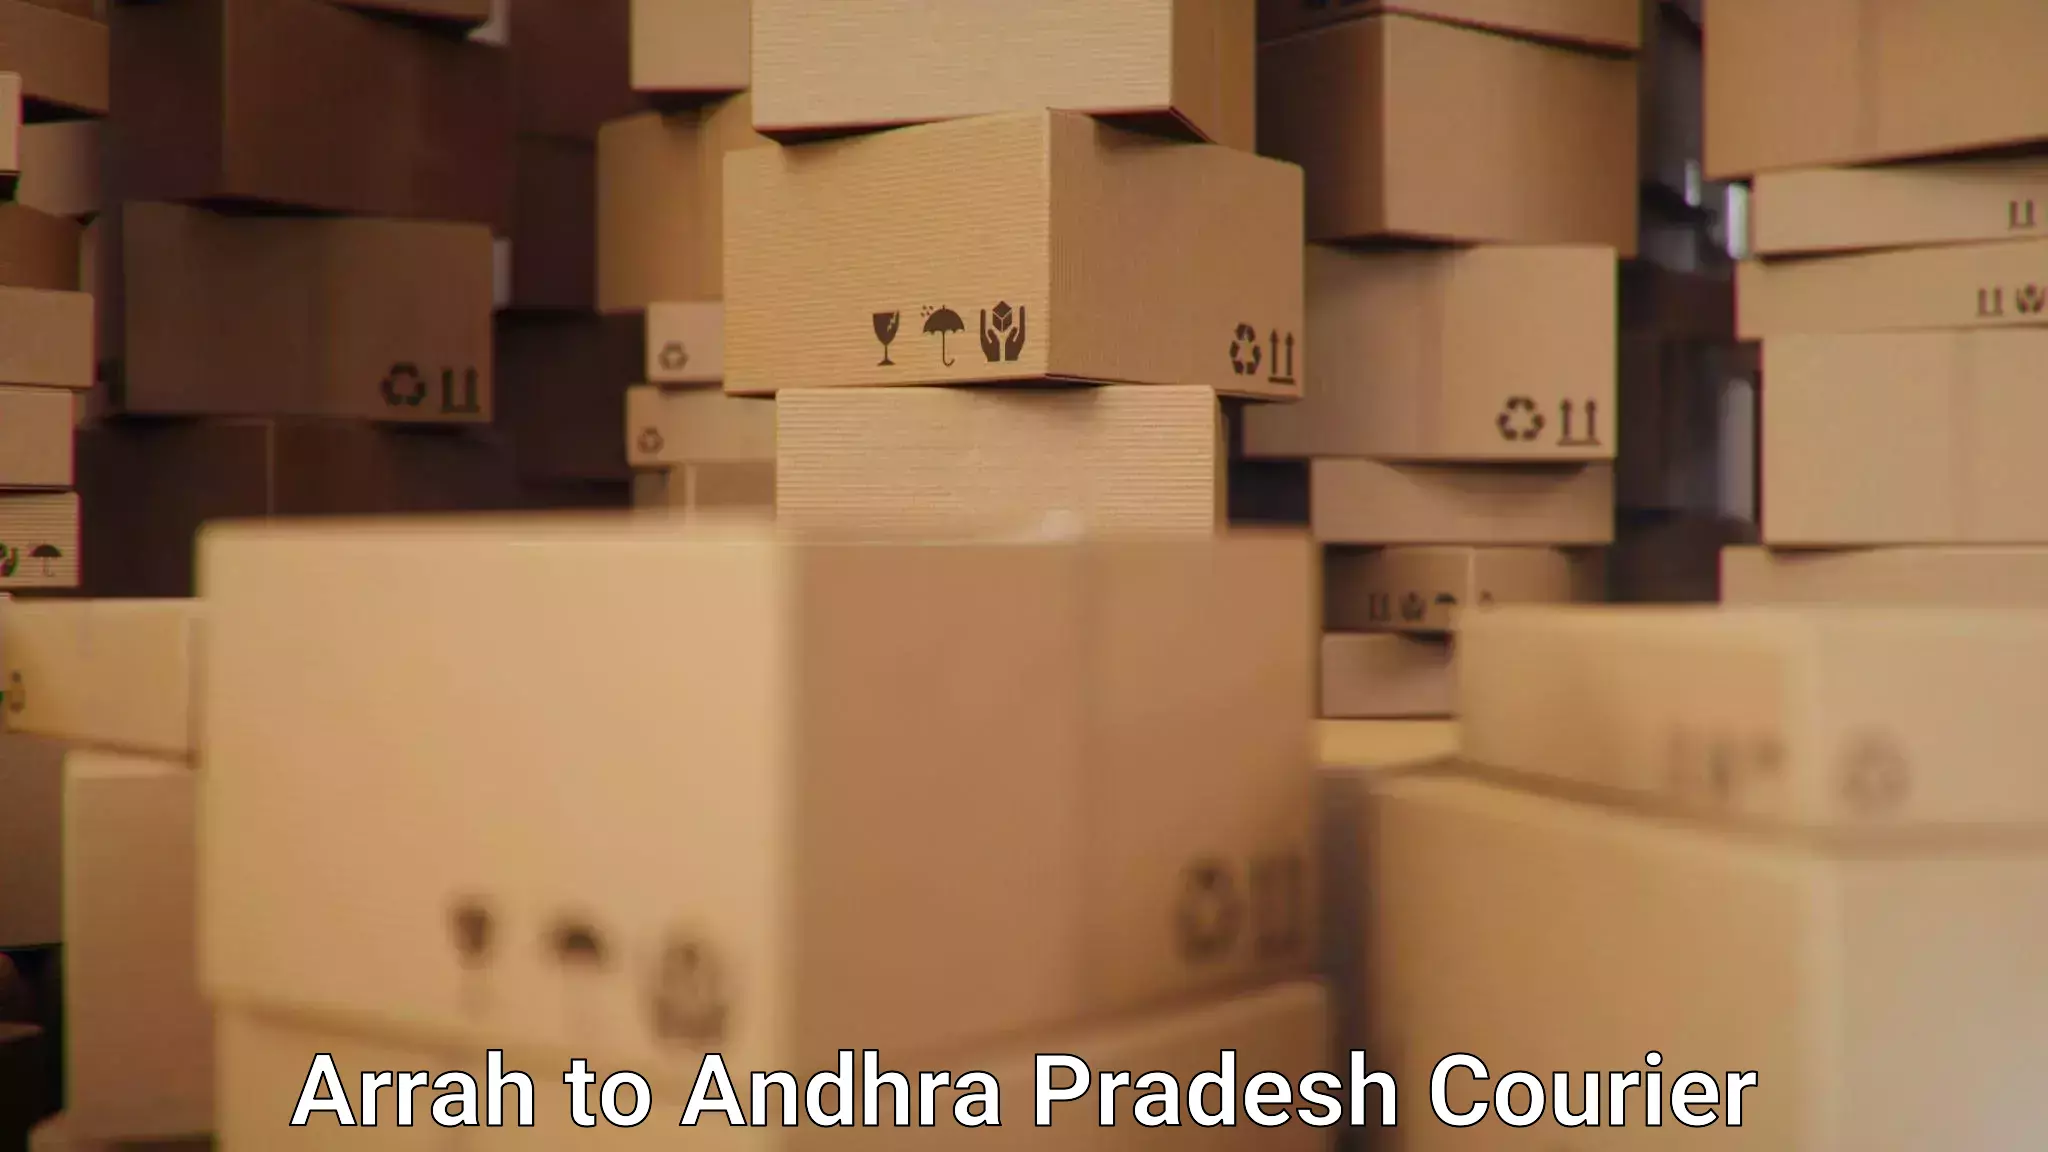 Express logistics Arrah to Andhra Pradesh